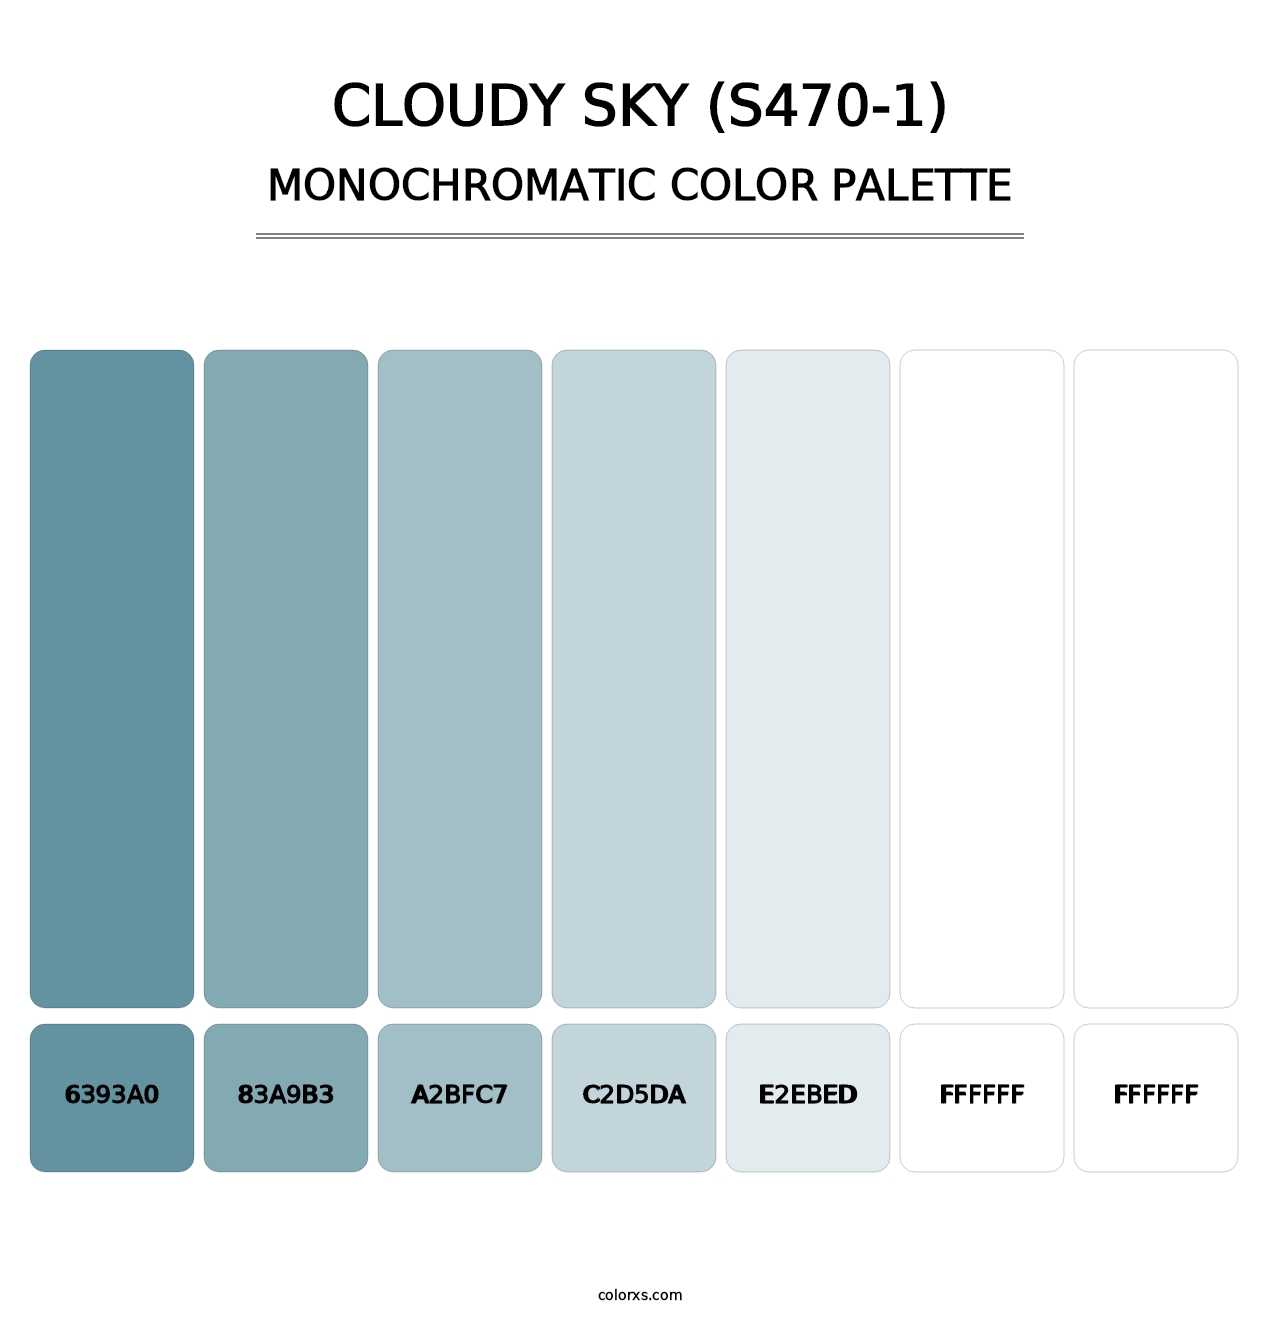 Cloudy Sky (S470-1) - Monochromatic Color Palette